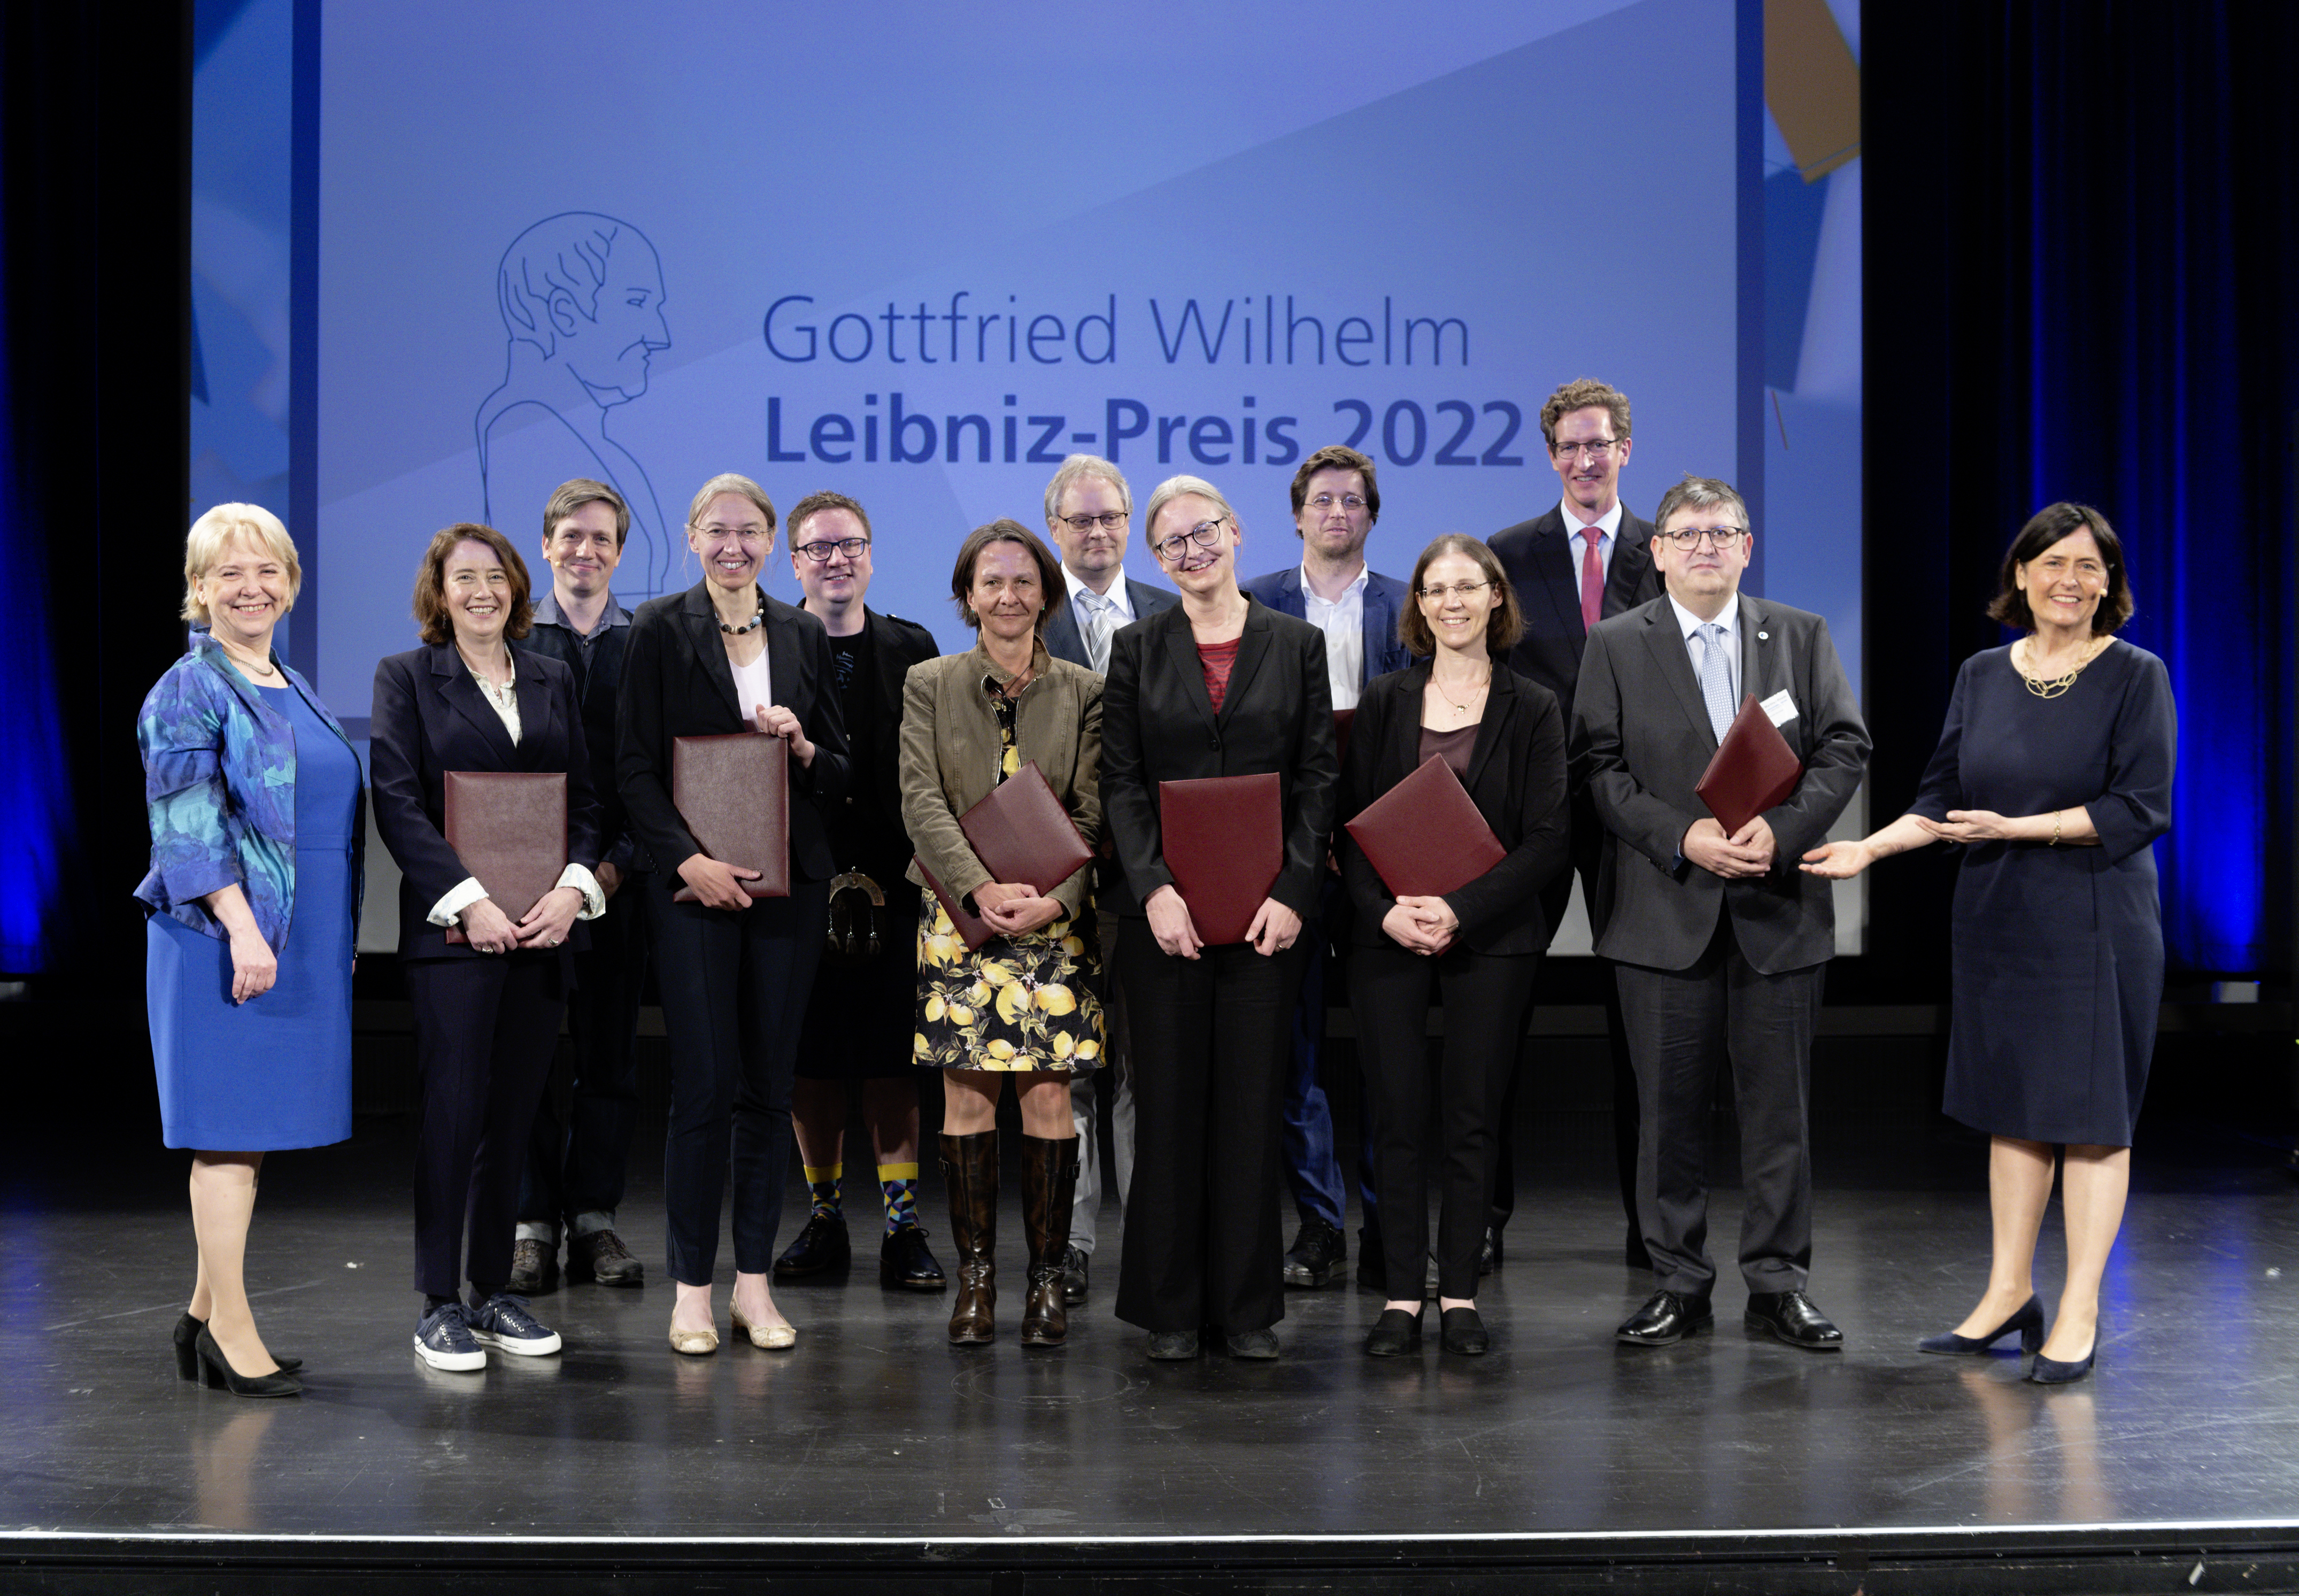 Die Preisträgerinnen und Preisträger des Leibniz-Preises 2022 mit ihren Urkunden am Ende der Veranstaltung.